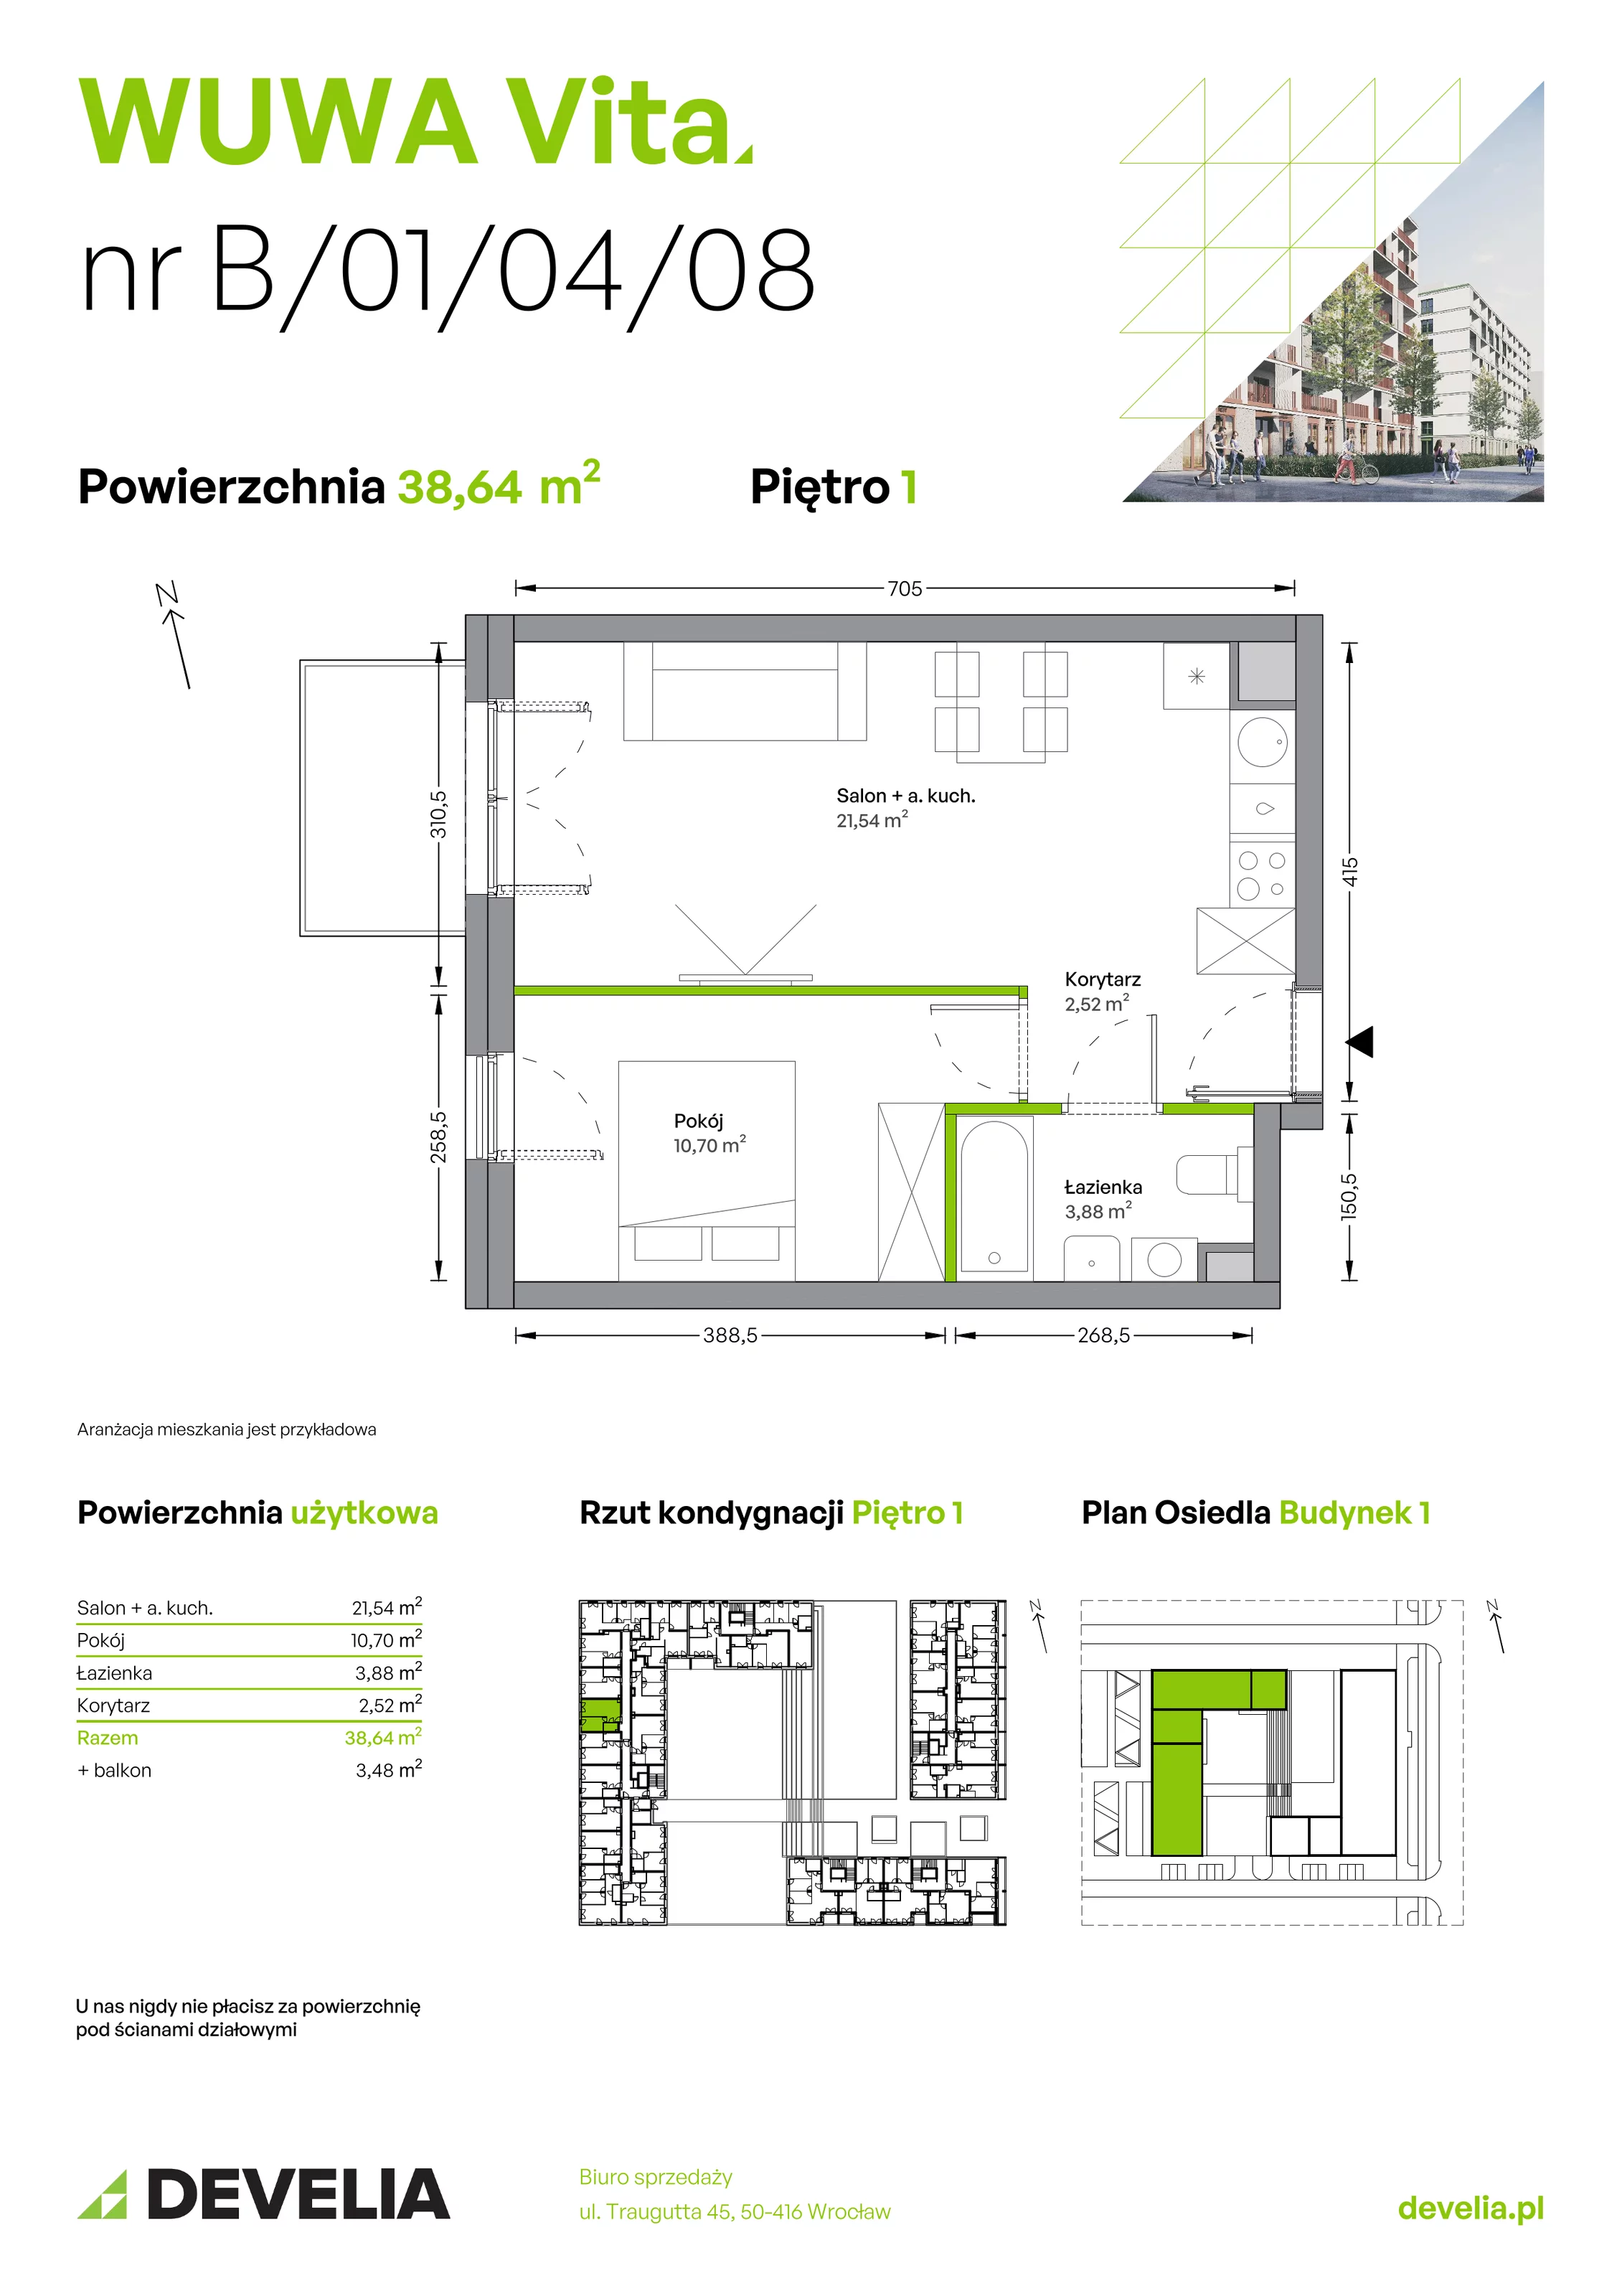 Mieszkanie 38,64 m², piętro 1, oferta nr B.01.04.08, WUWA Vita, Wrocław, Żerniki, Fabryczna, ul. Tadeusza Brzozy